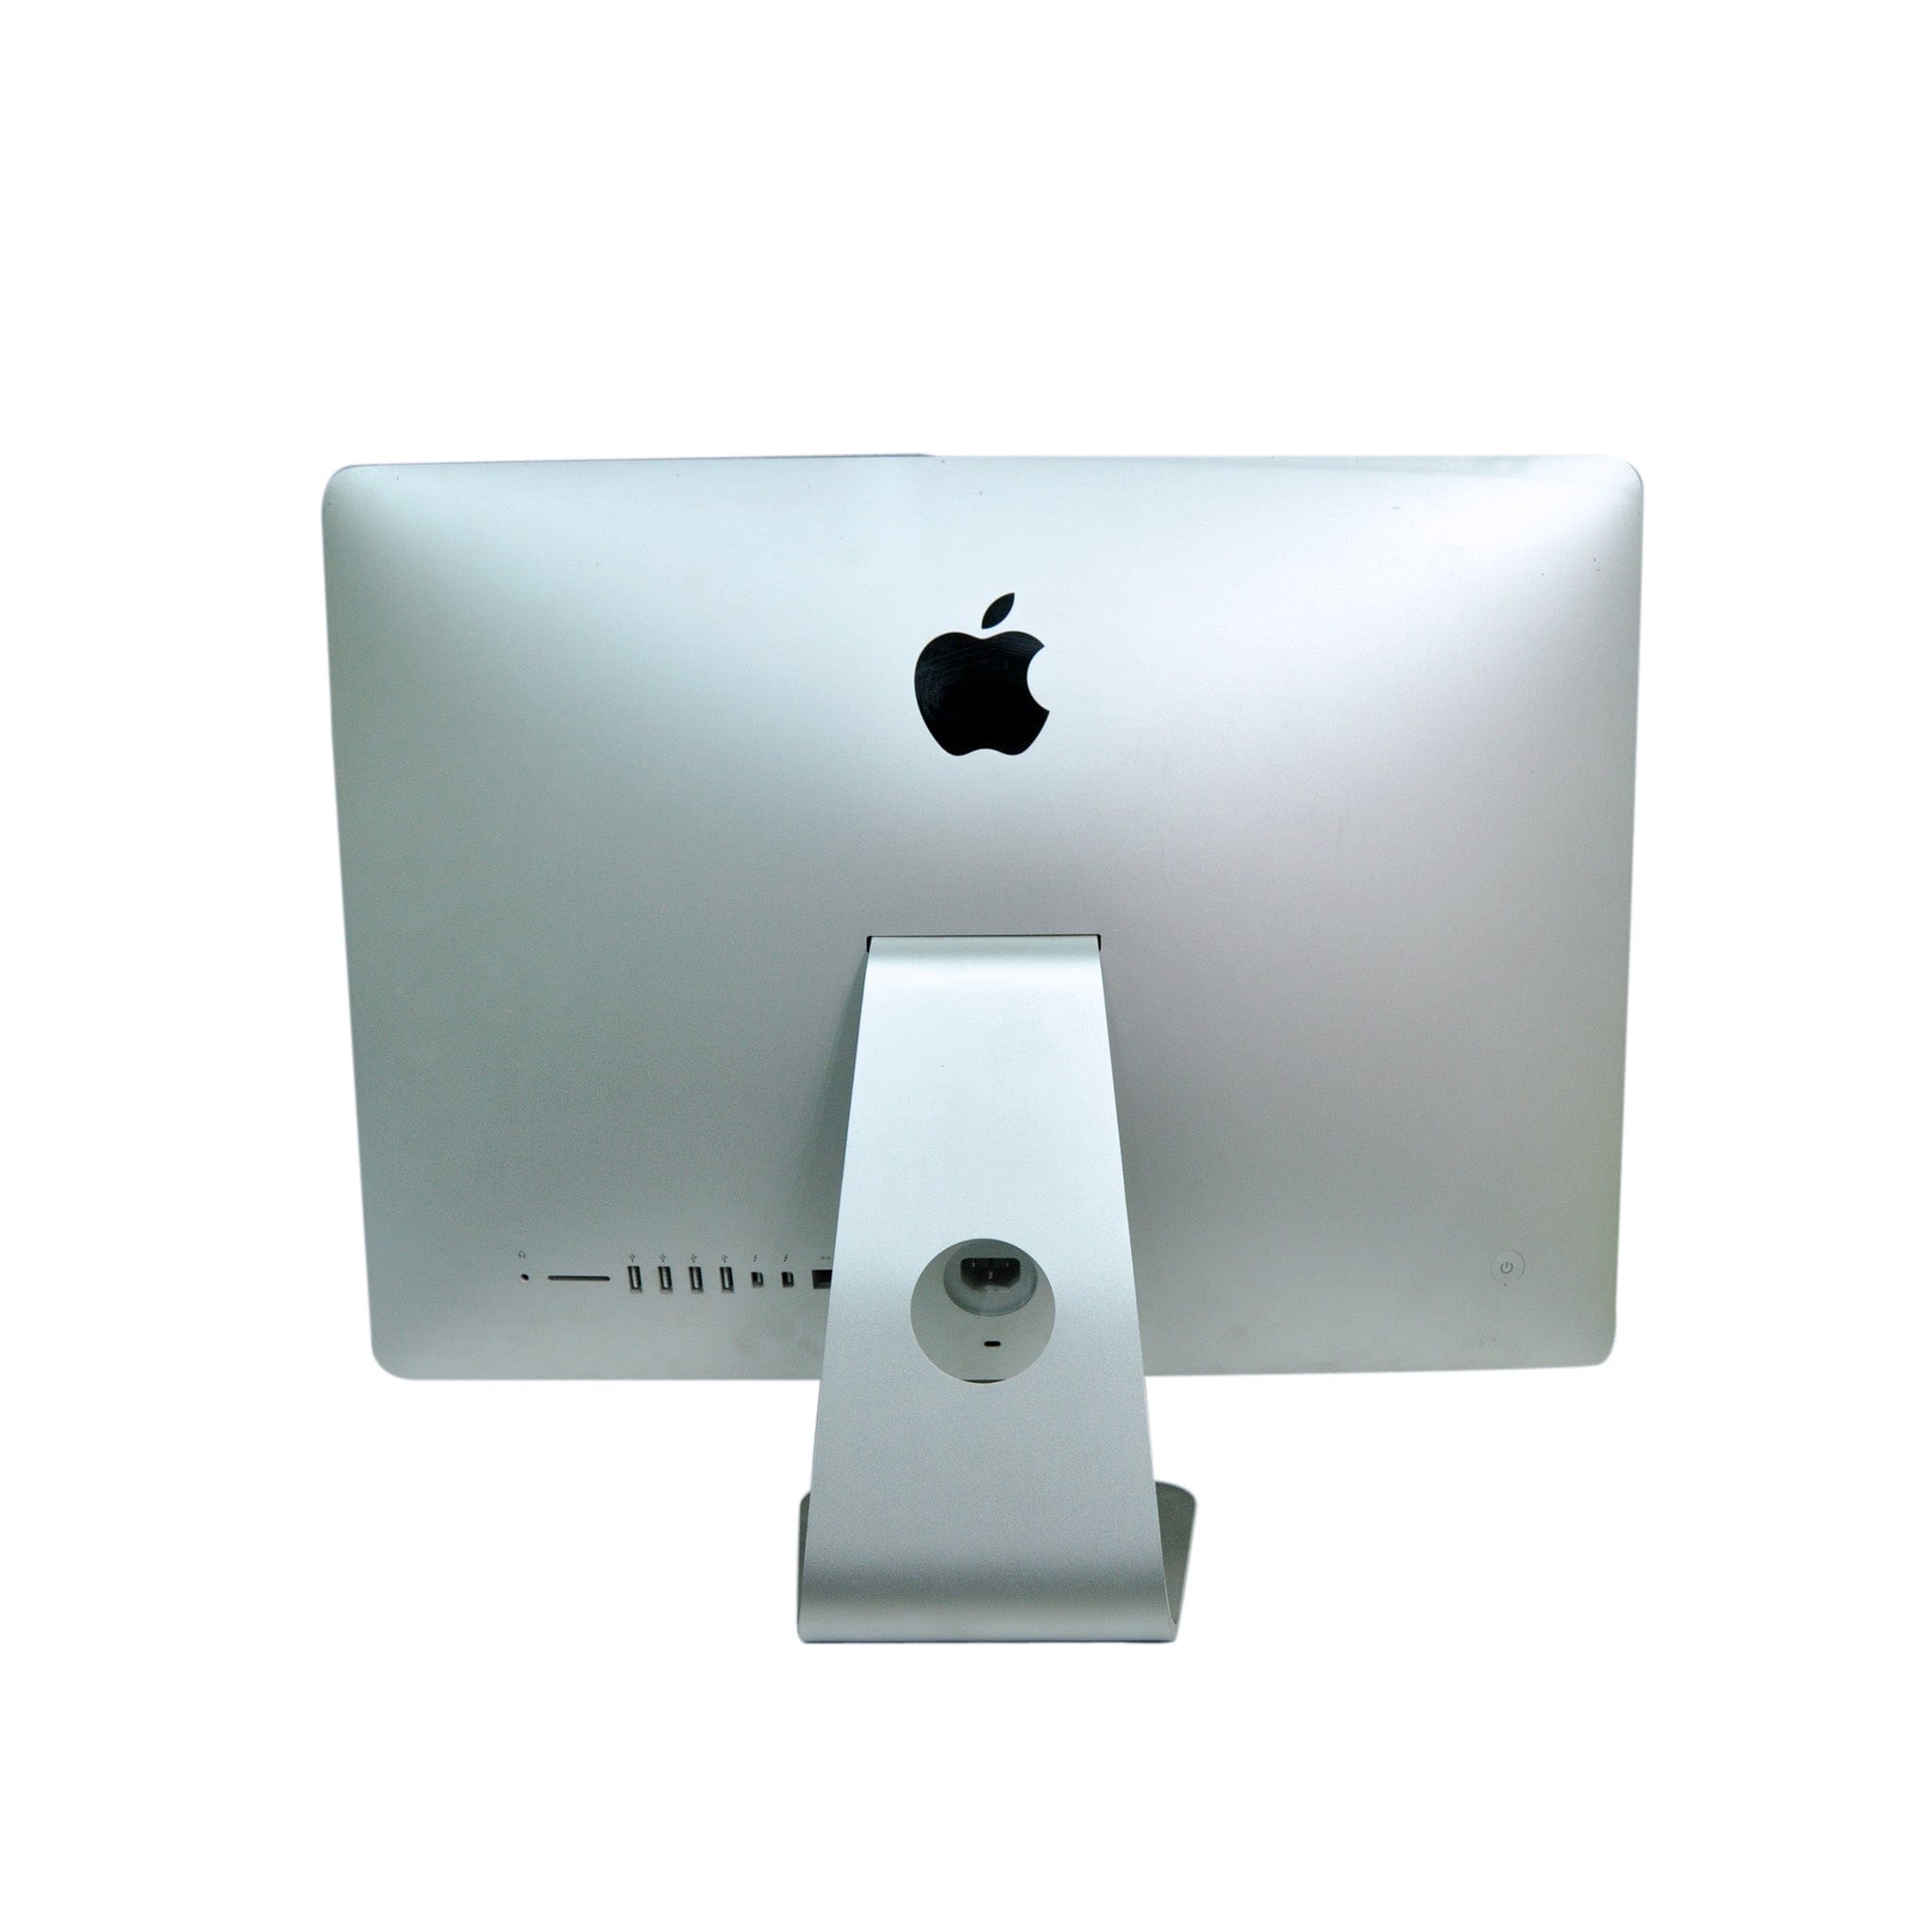 iMac2012 11月モデル MD093J A - Macデスクトップ